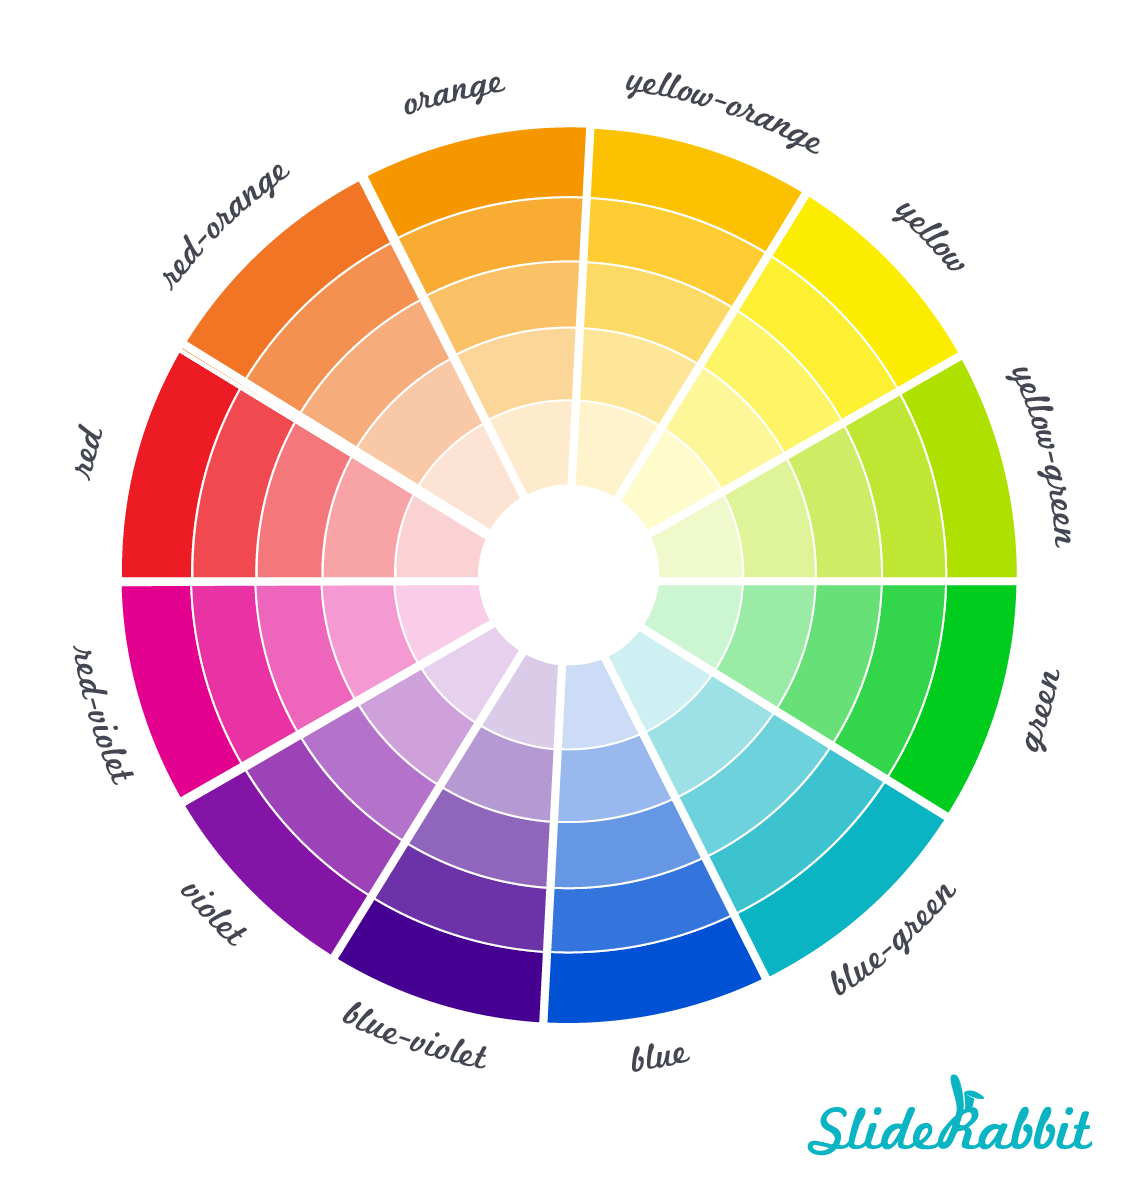 Slide Design: Building a Powerful Color Palette